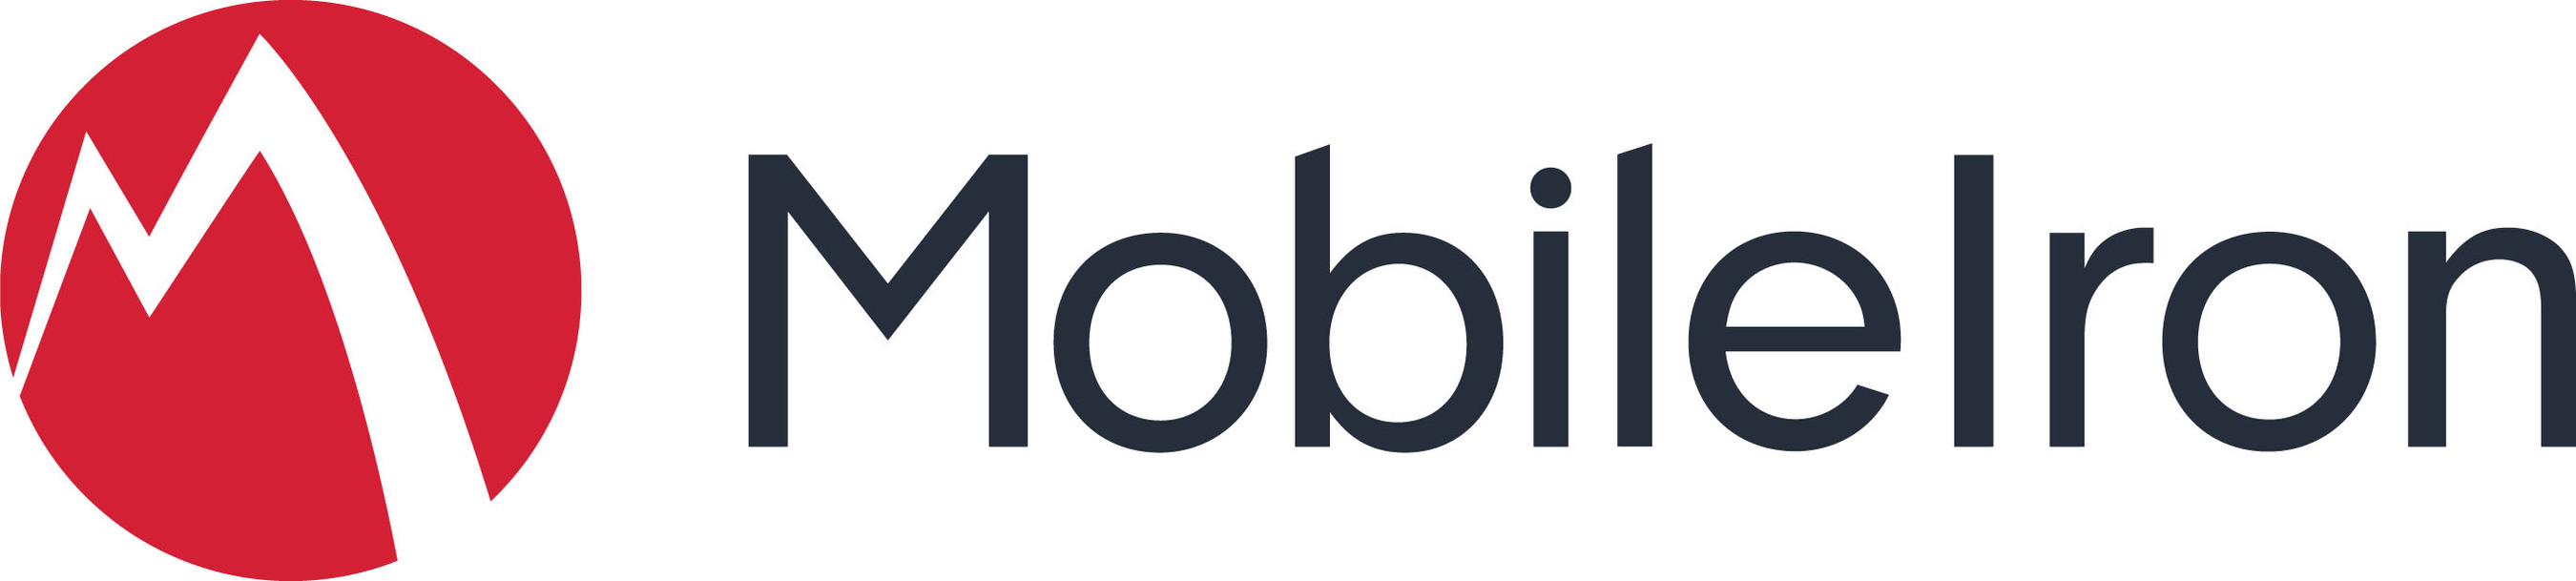 MobileIron's Logo.